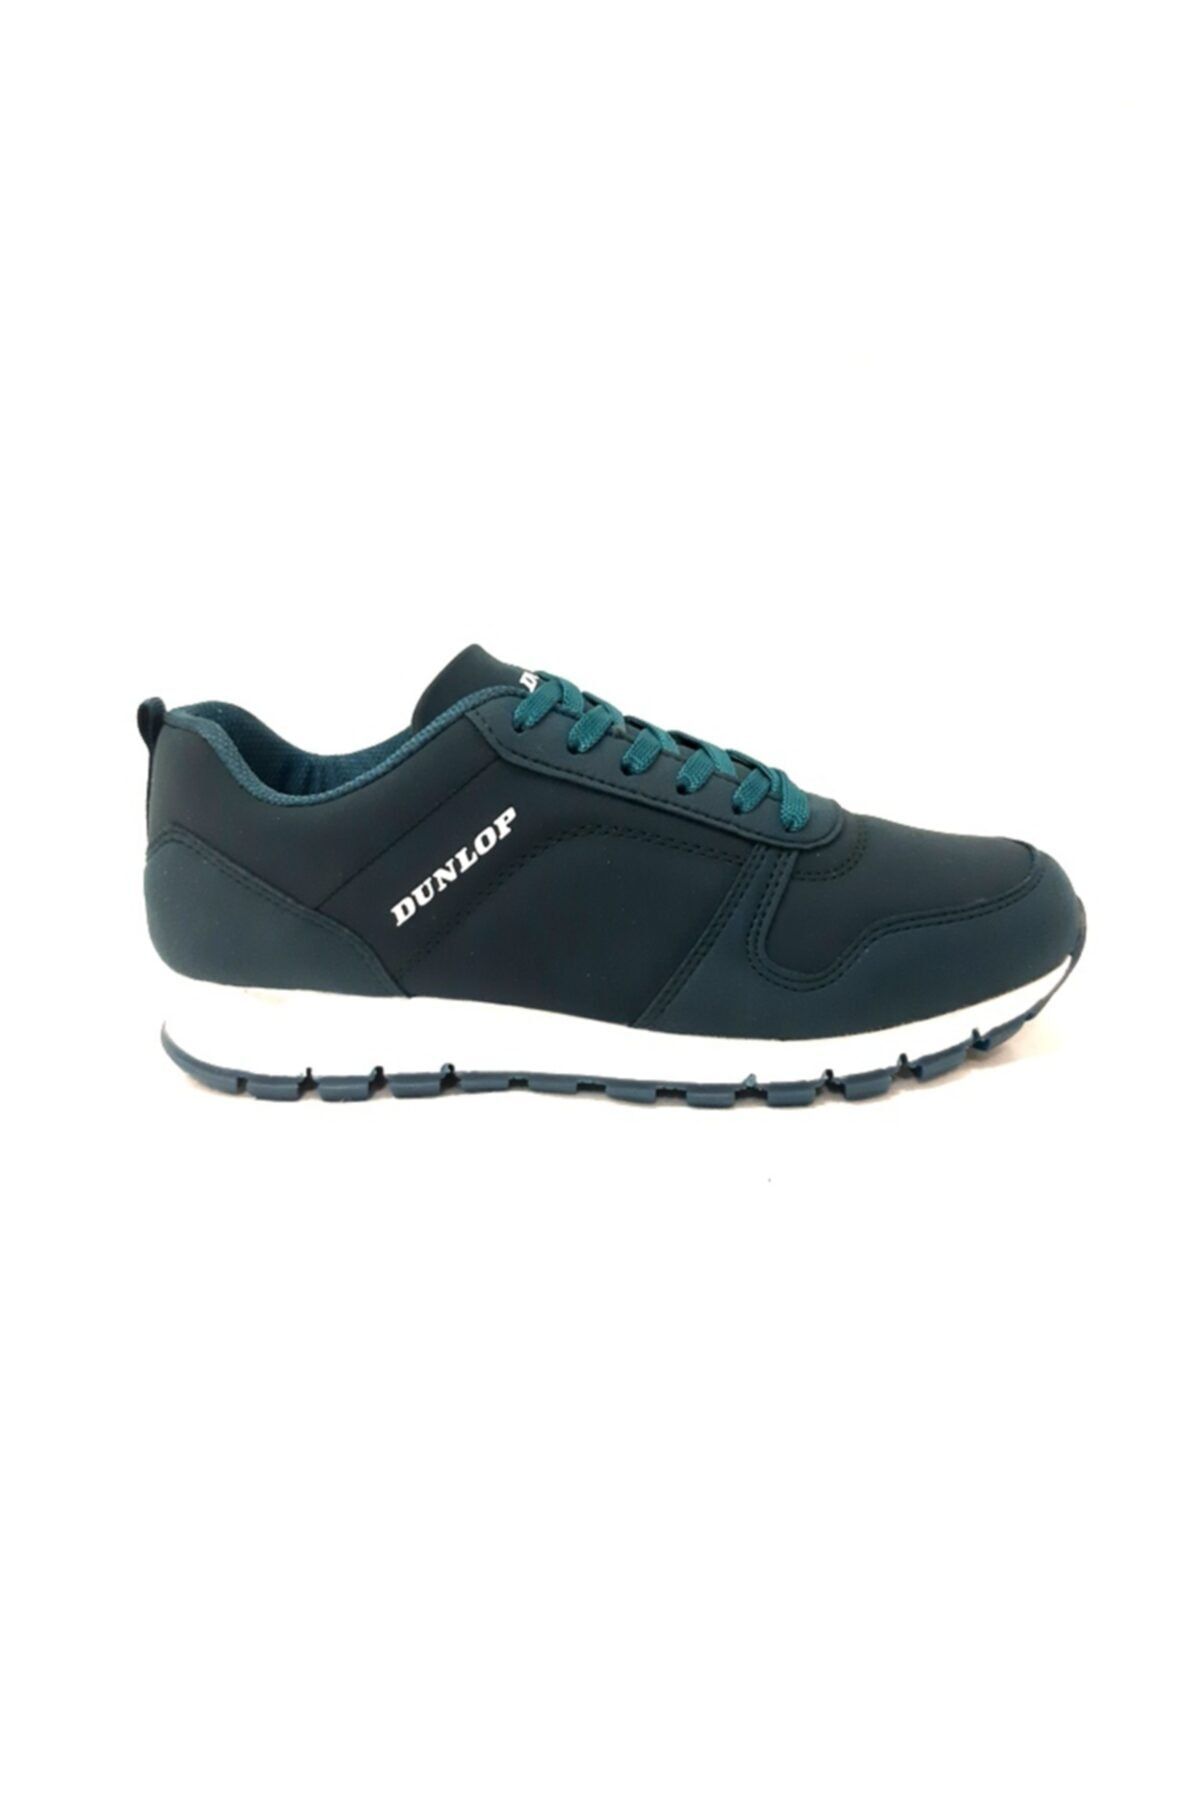 Dunlop Comfort Unisex Spor Ayakkabı